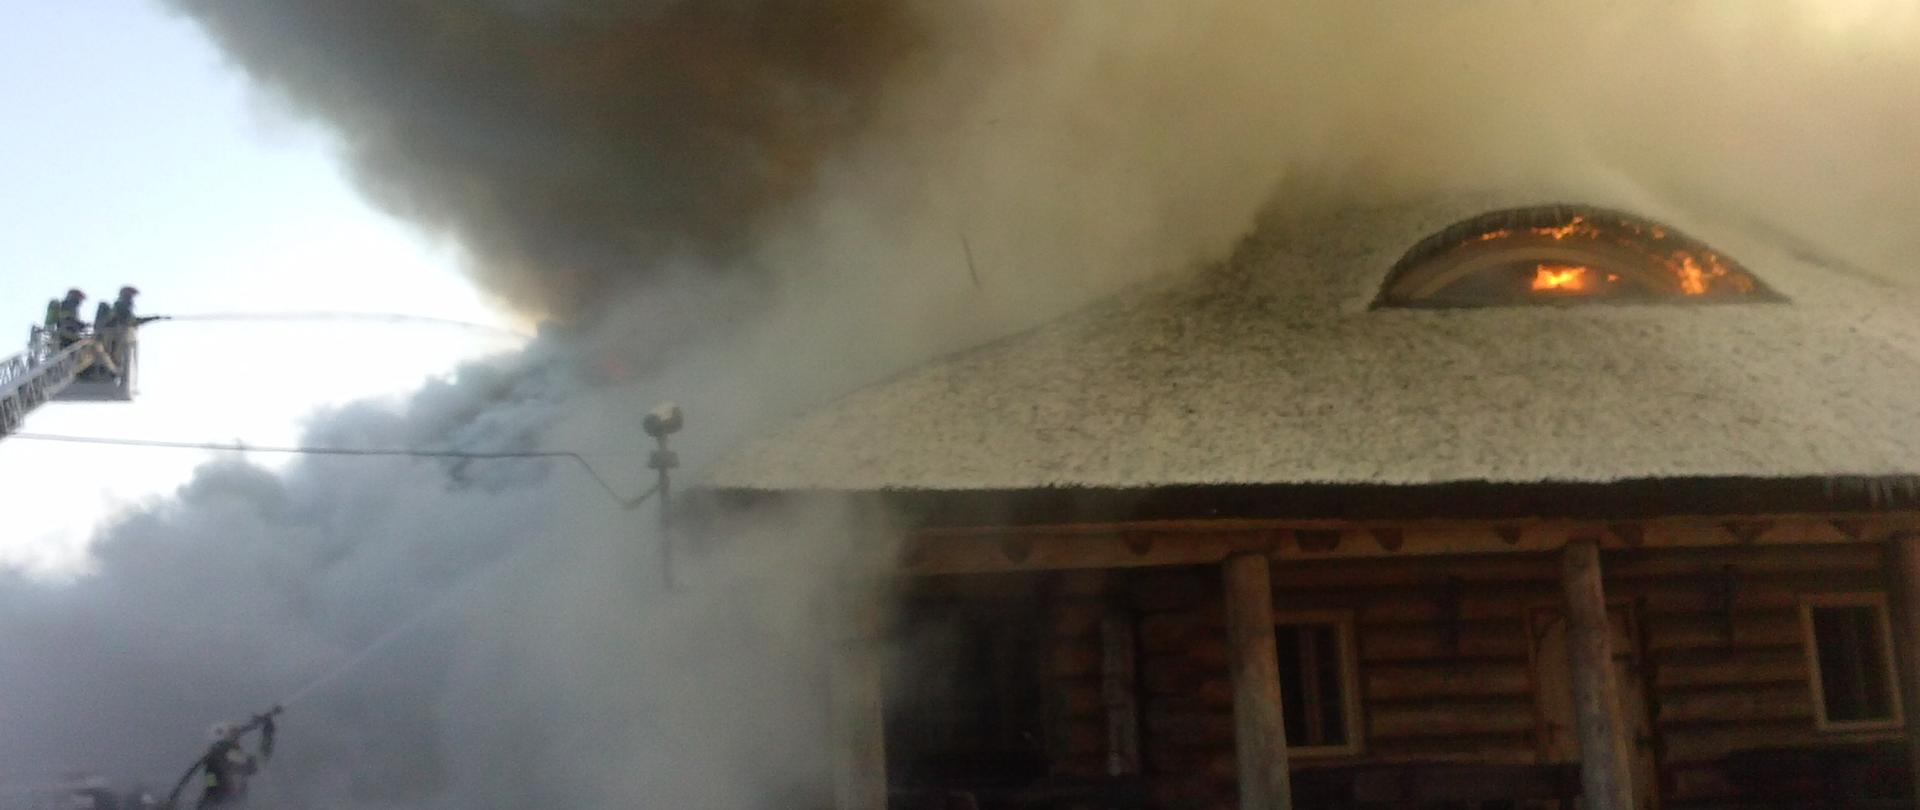 Budynek zbudowany z belek i siana płonie, strażacy gaszą pożar przy użyciu drabiny